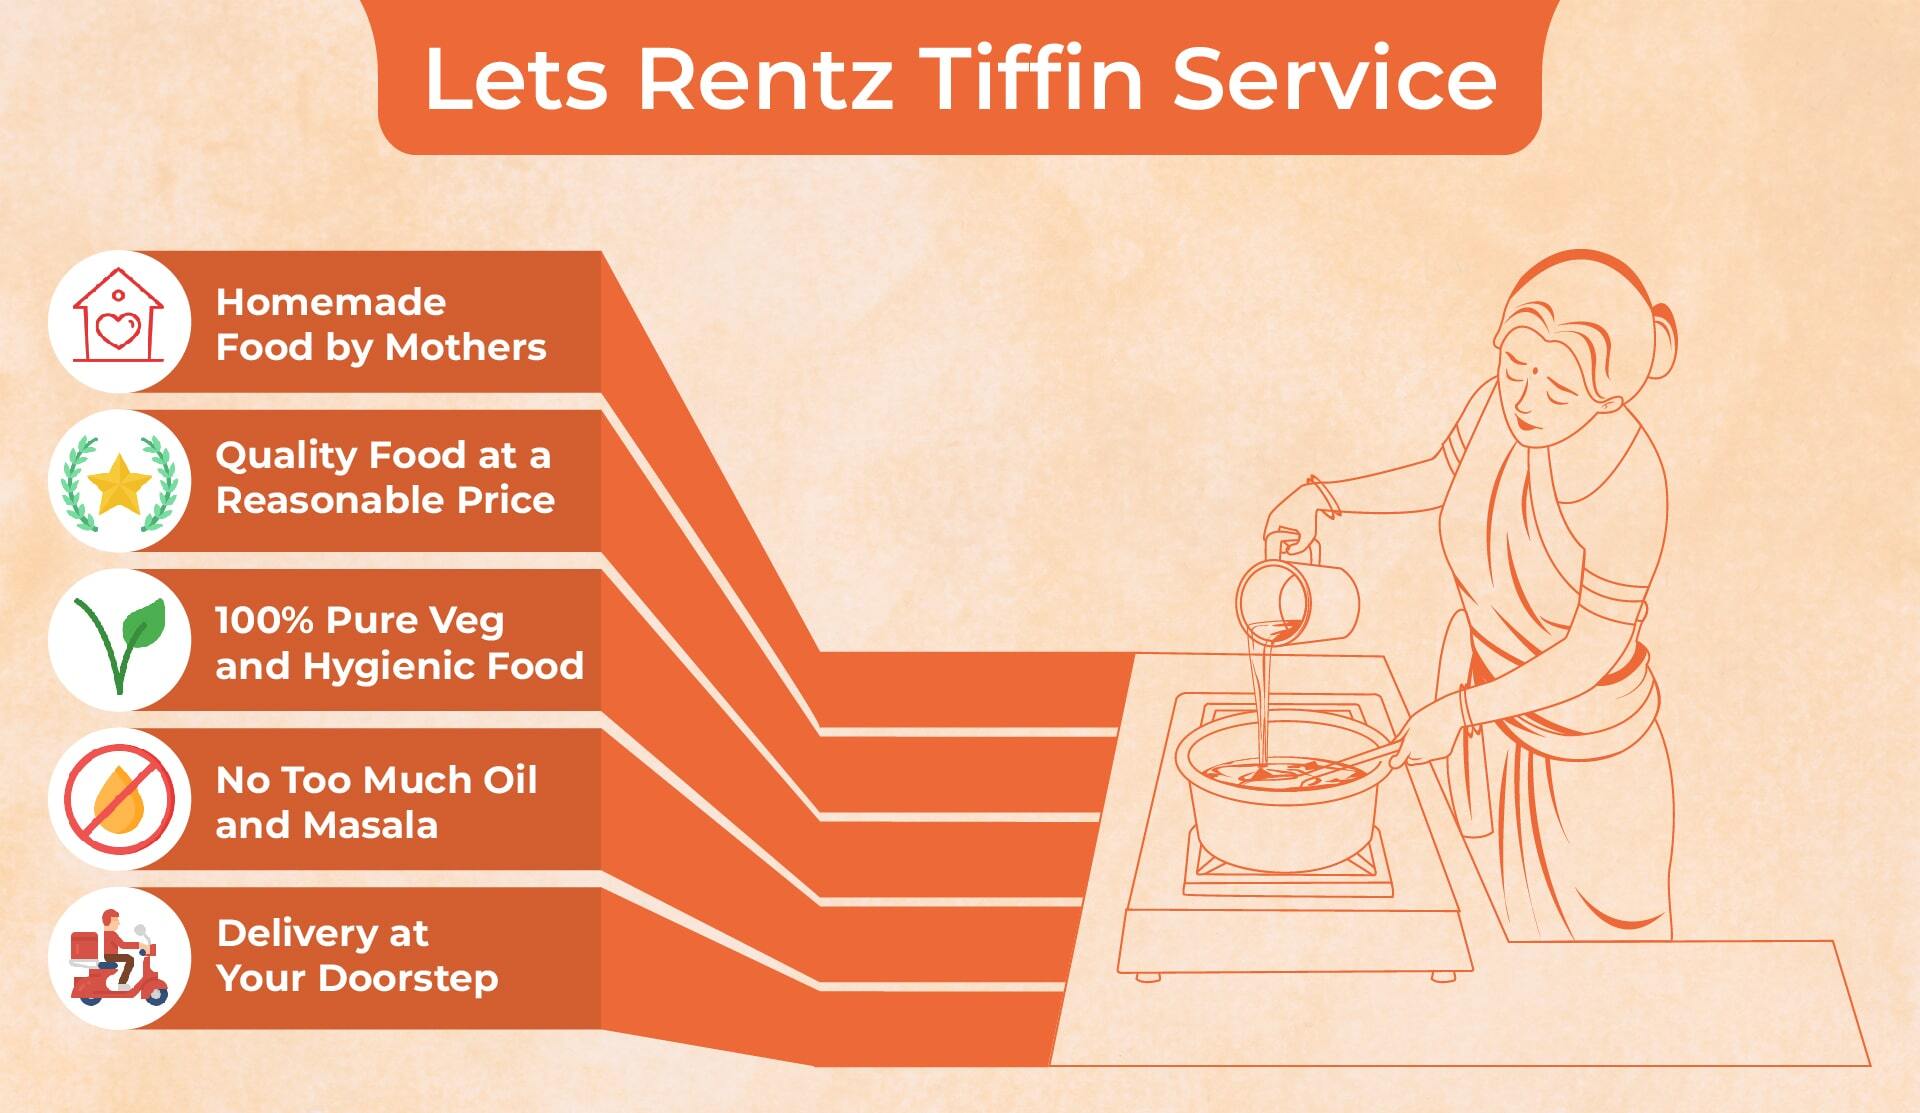 Lets Rentz tiffin service